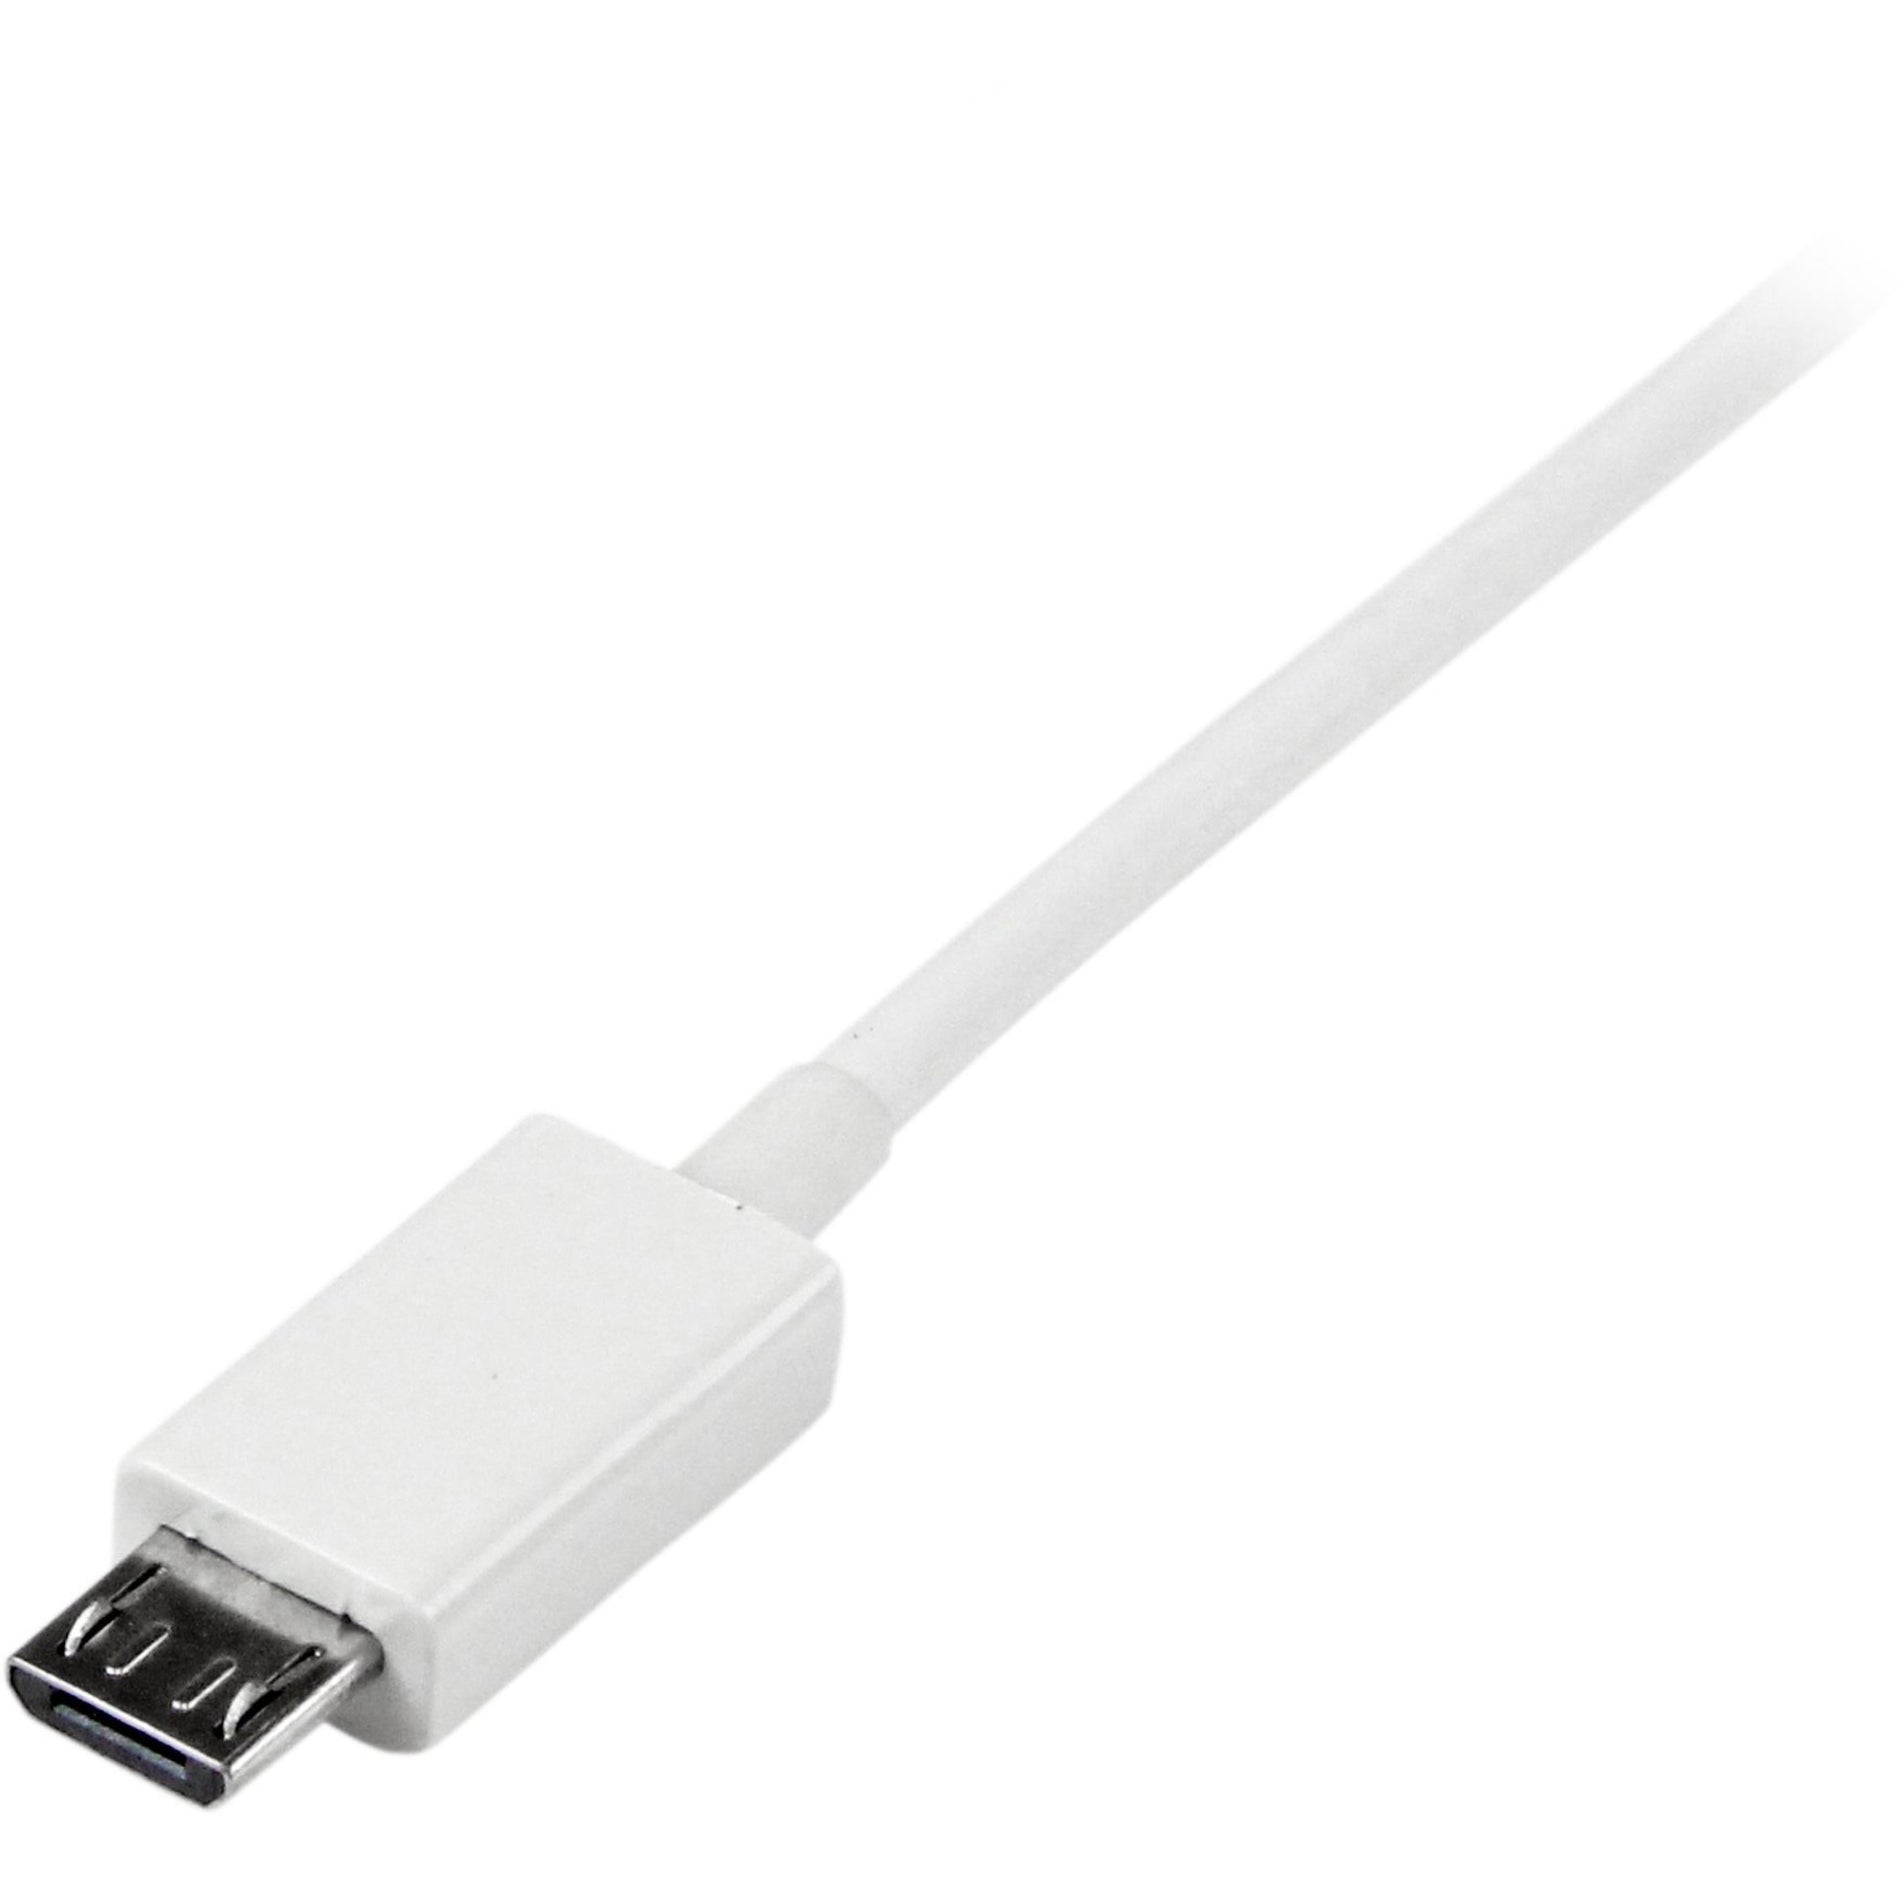 StarTech.com Cavo USBPAUB50CMW 0.5m Bianco Micro USB - A a Micro B Stampato Rilievo per Sforzo Velocità di Trasferimento Dati di 480 Mbit/s